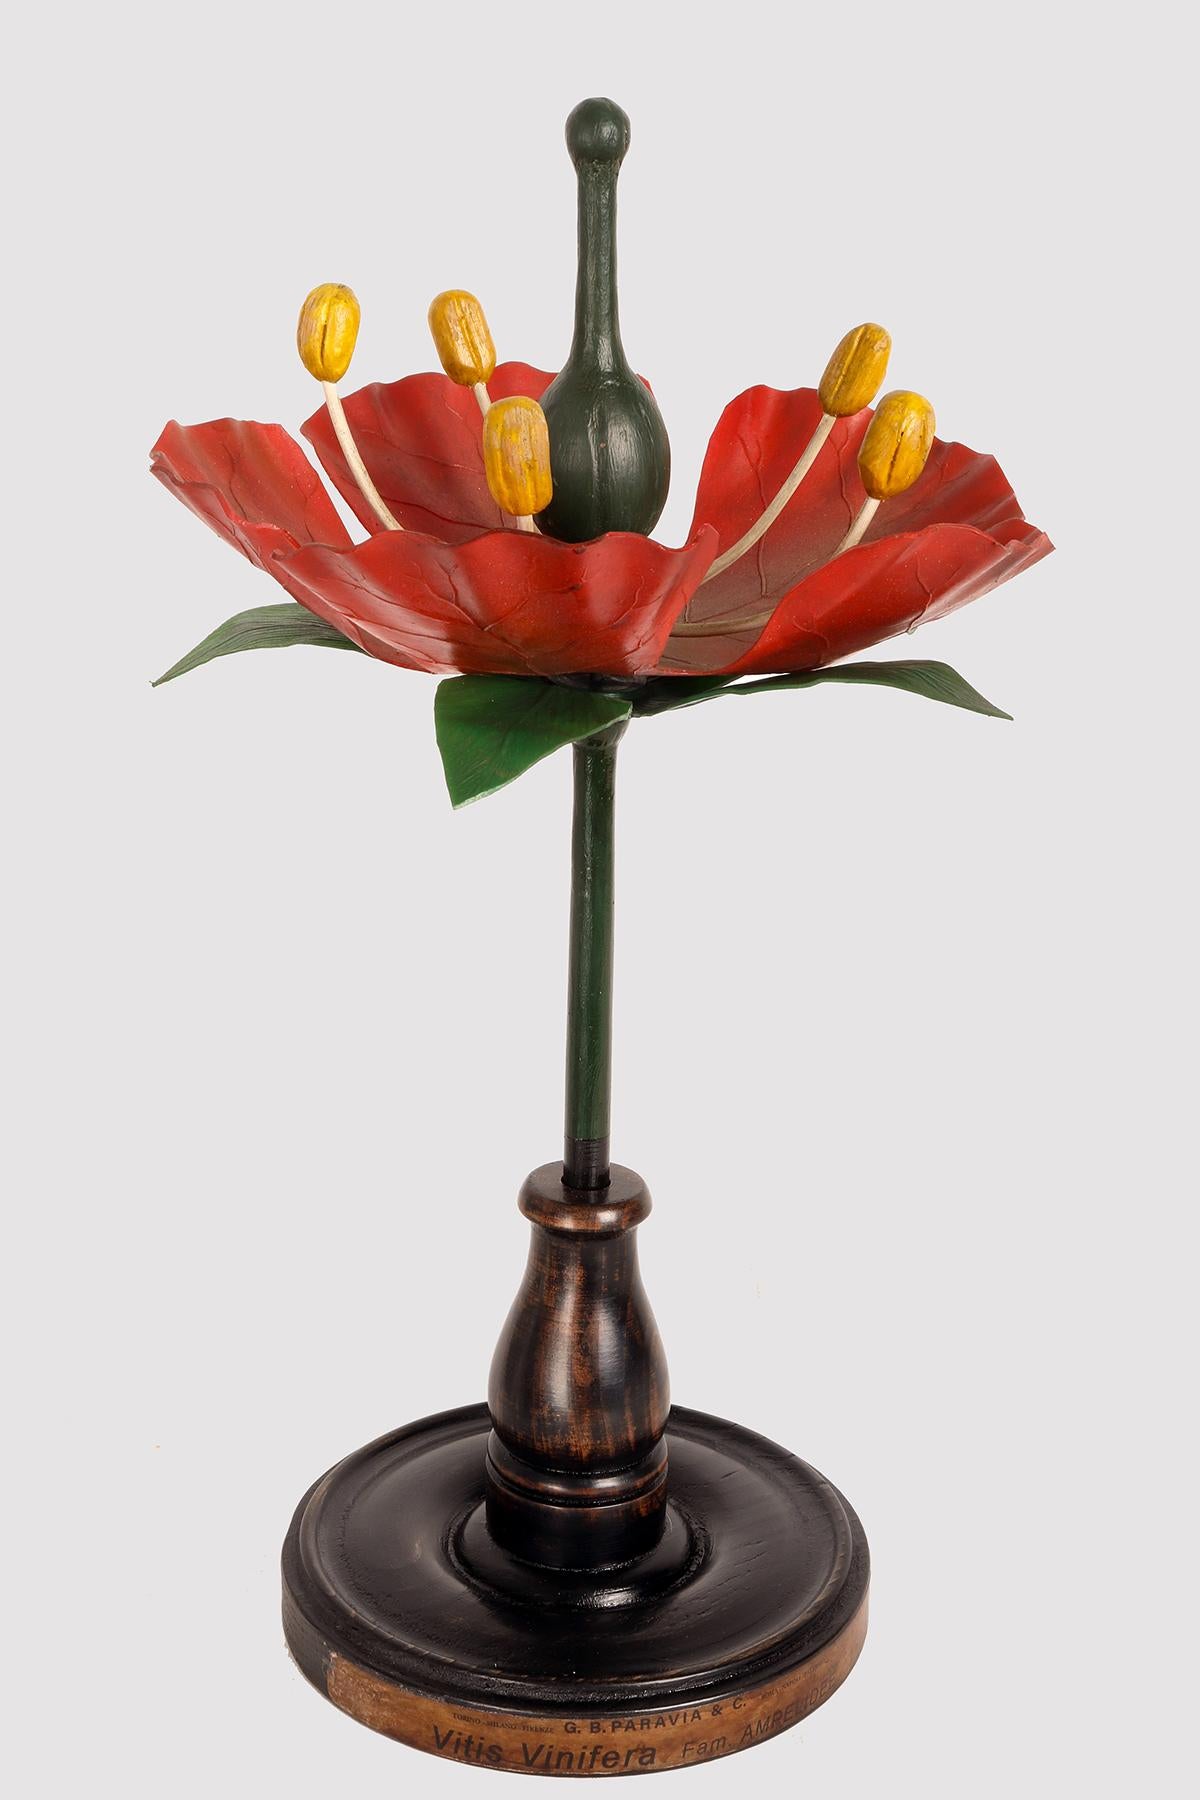 Maquette botanique à usage didactique, représentant une fleur de raisin rouge, Vitis Vinifera, Anipelidee. Réalisé en métal, papier, plâtre, galalithe et bois. Extrêmement détaillé. Paravia, Milan, Italie vers 1940.